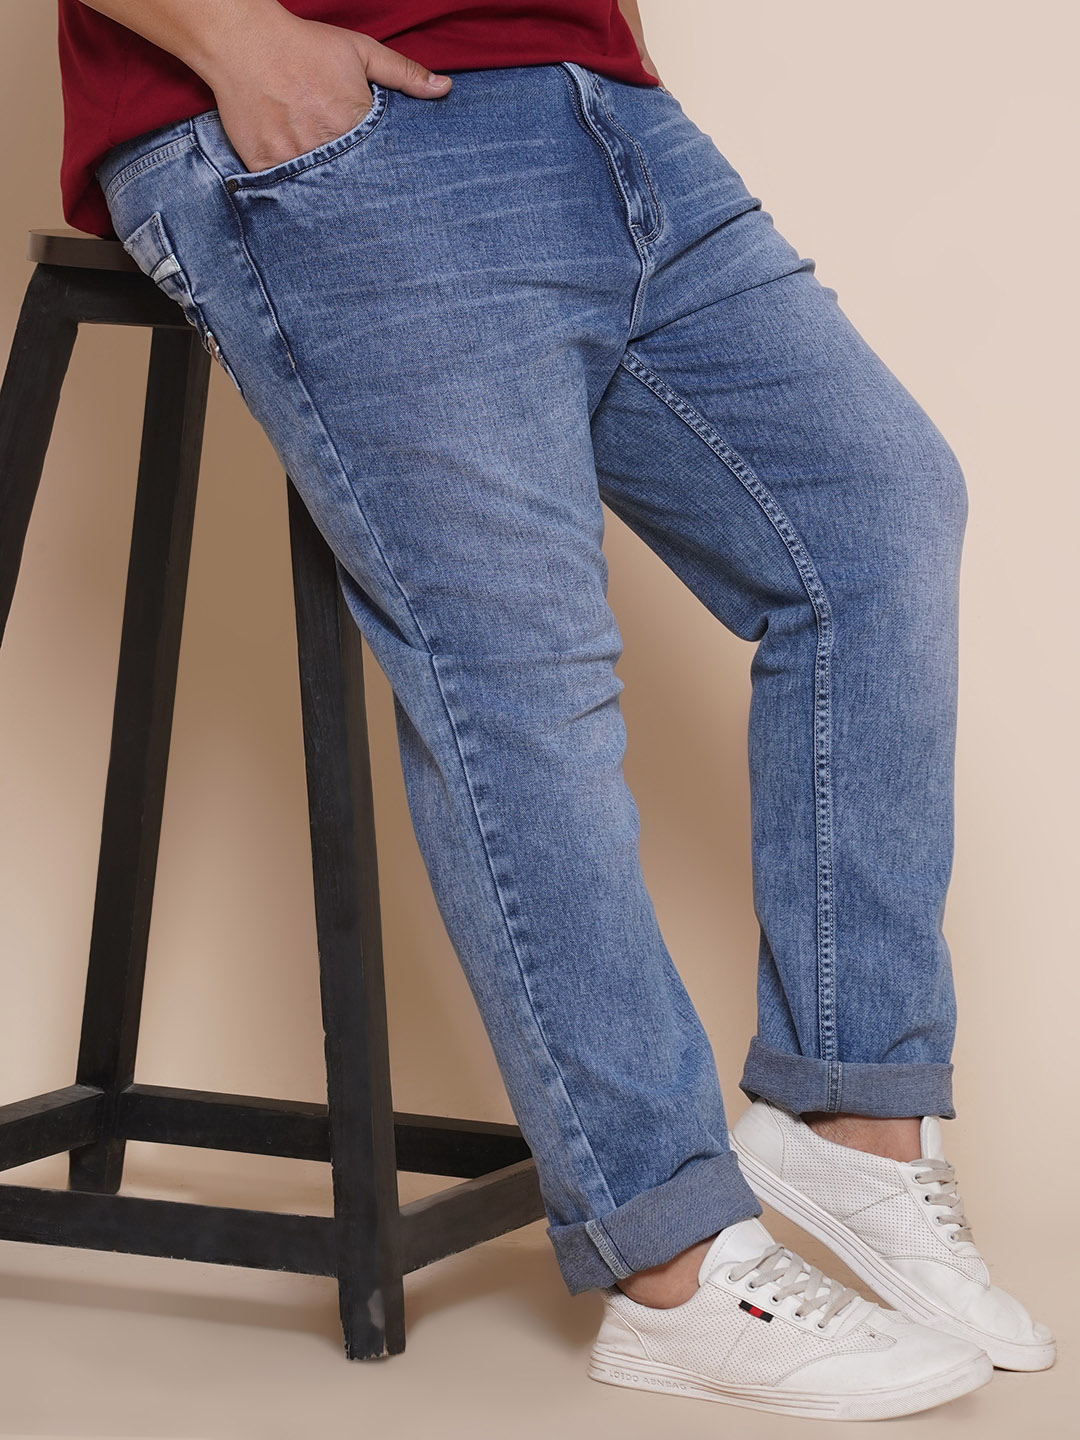 bottomwear/jeans/JPJ27001/jpj27001-1.jpg